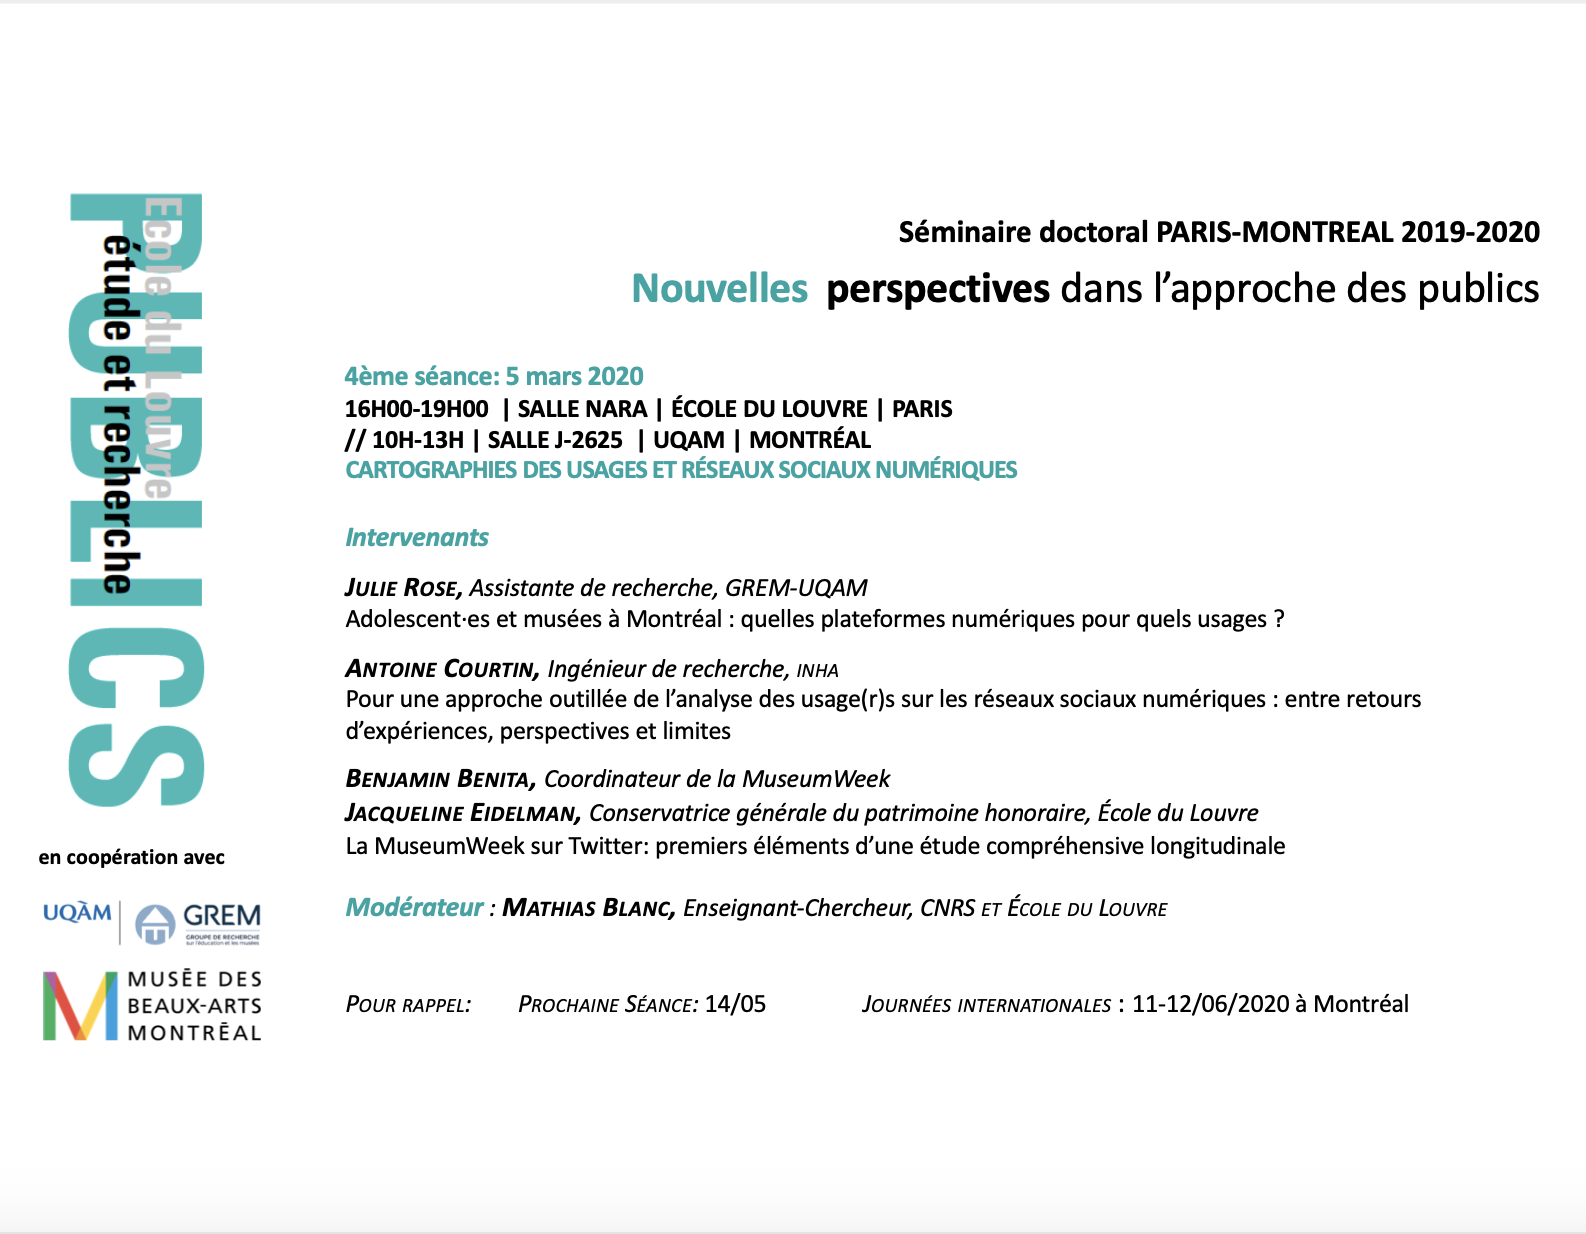 Séminaire doctoral PARIS-MONTRÉAL | Nouvelles perspectives dans l’approche des publics